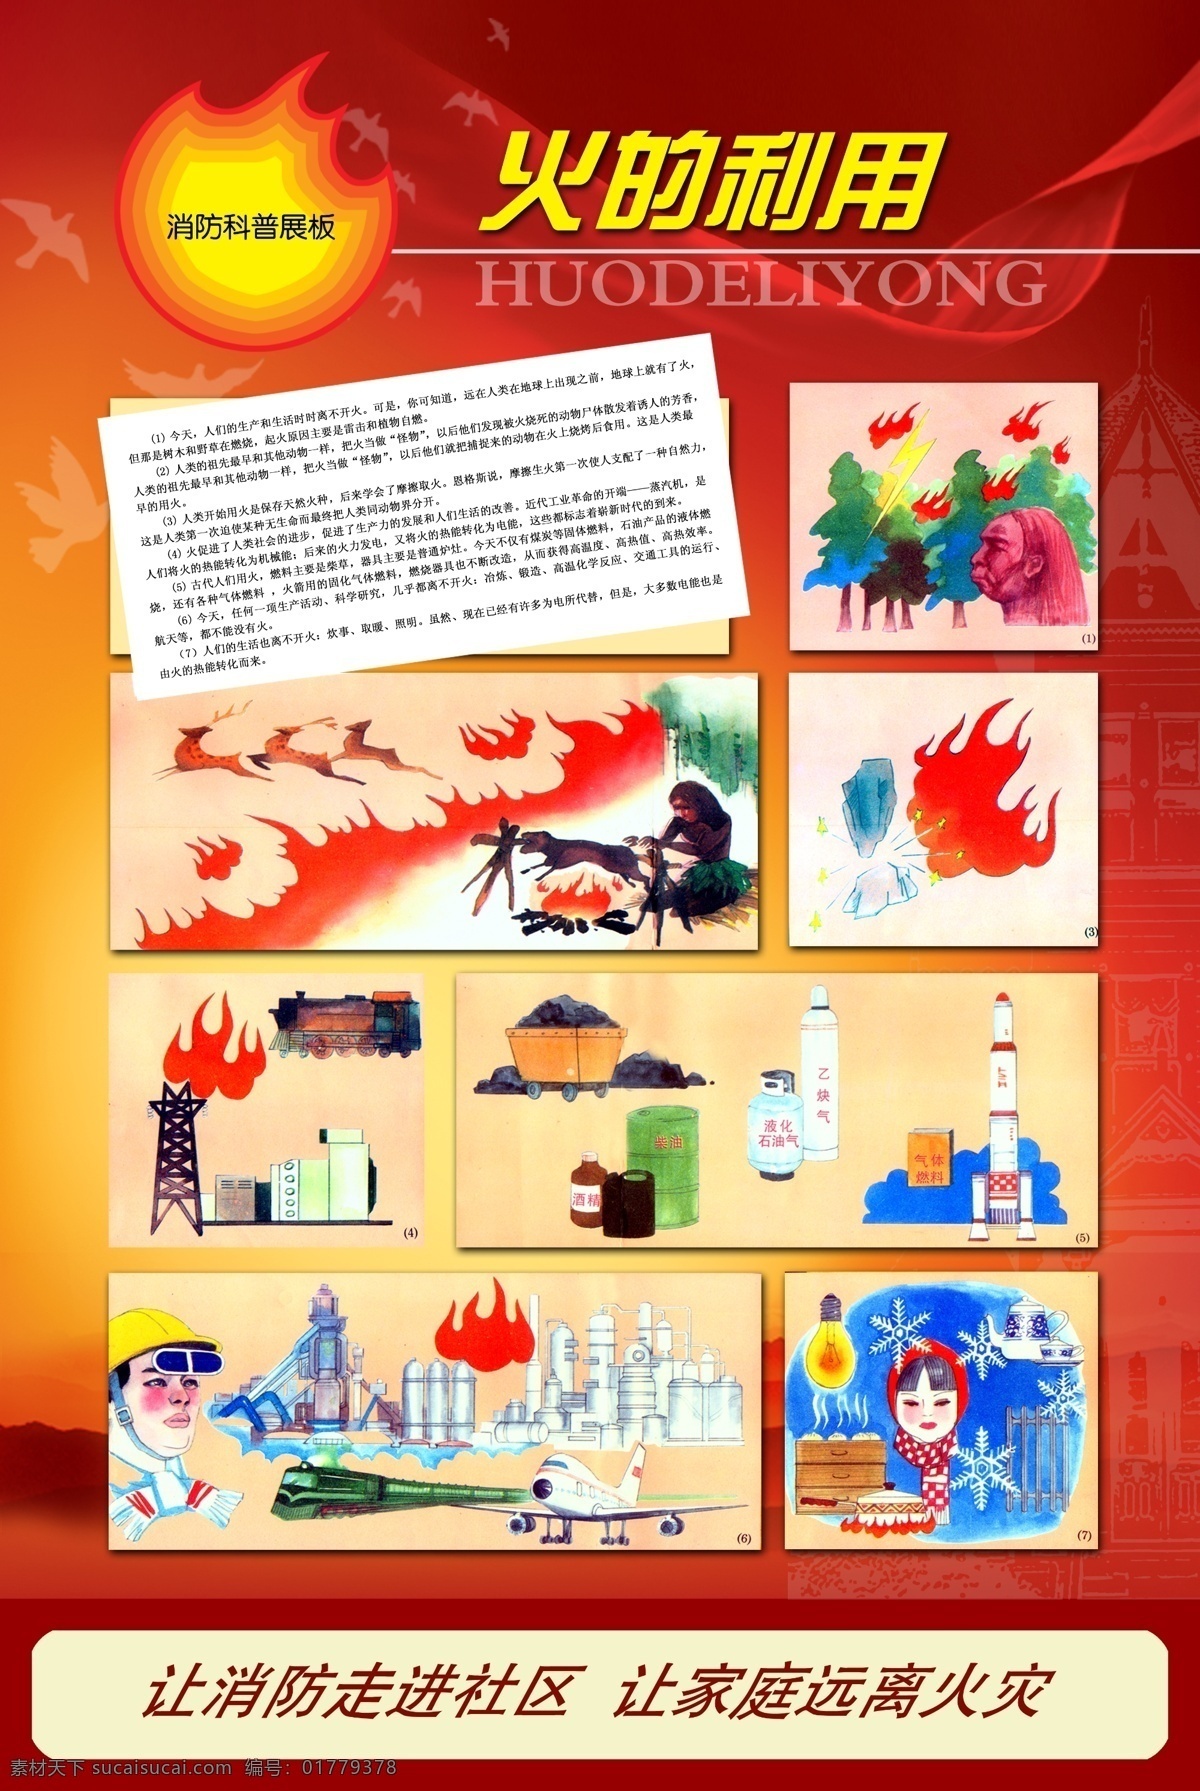 消防 科普 展板 广告设计模板 漫画 森林防火 图版 源文件 展板模板 消防科普展板 工业防火 其他展板设计